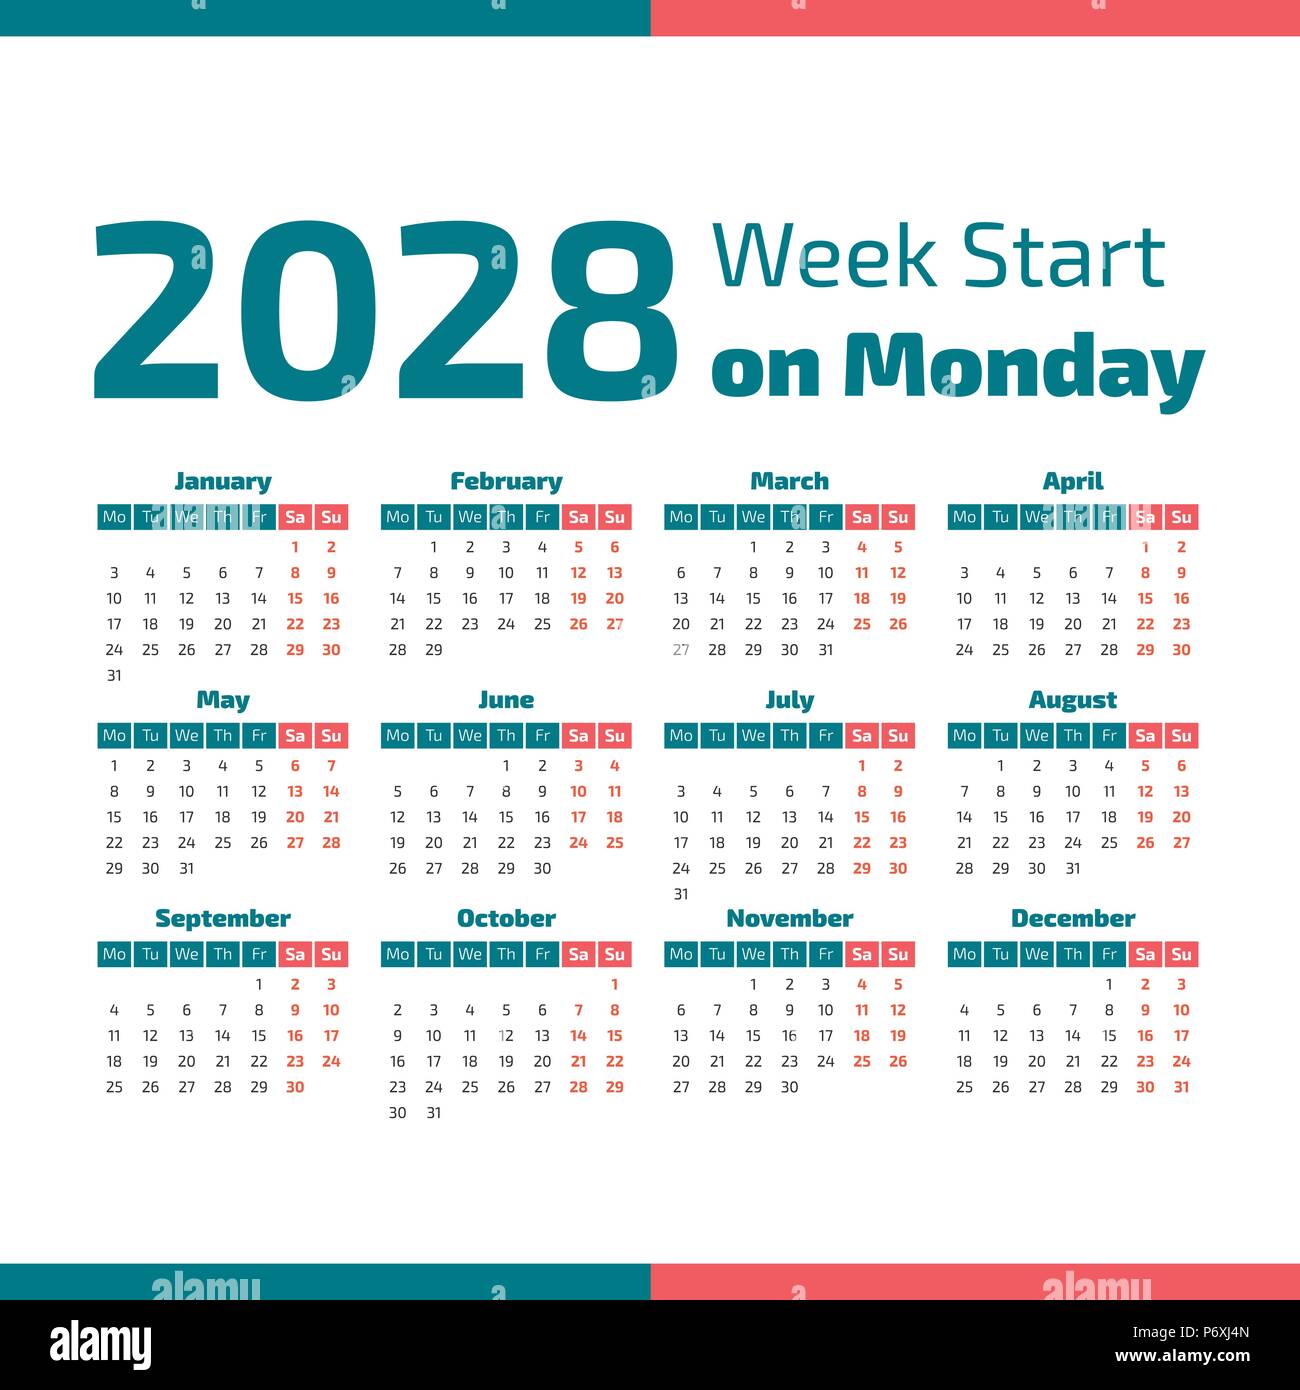 Calendrier de l'année 2028 simple, d'une semaine commence le lundi